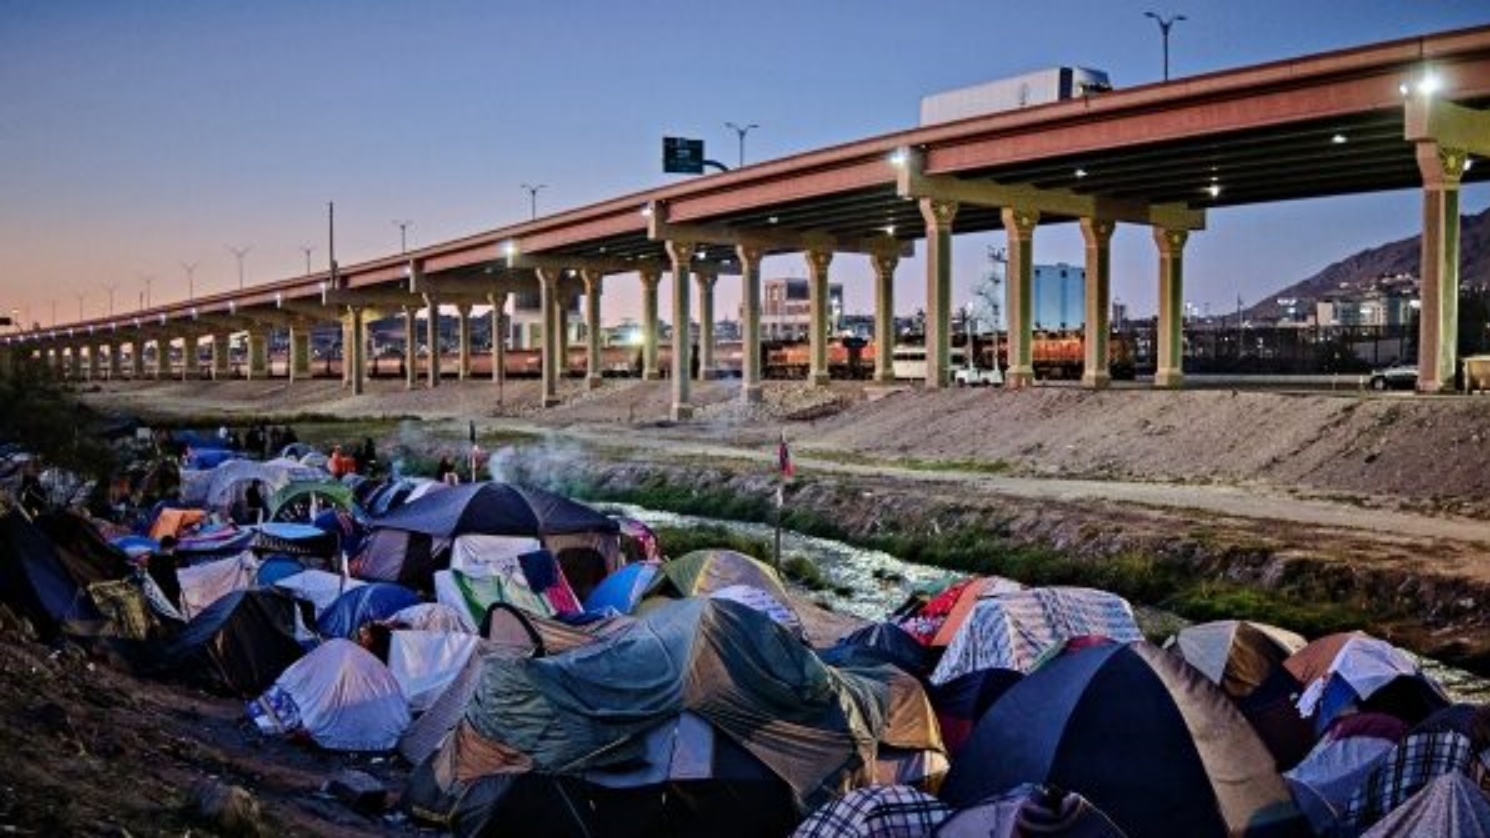 مخيم للمهاجرين على ضفاف نهر ريو غراندي في سيوداد خواريز، ولاية تشيهواهوا، المكسيك، في 15 نوفمبر 2022